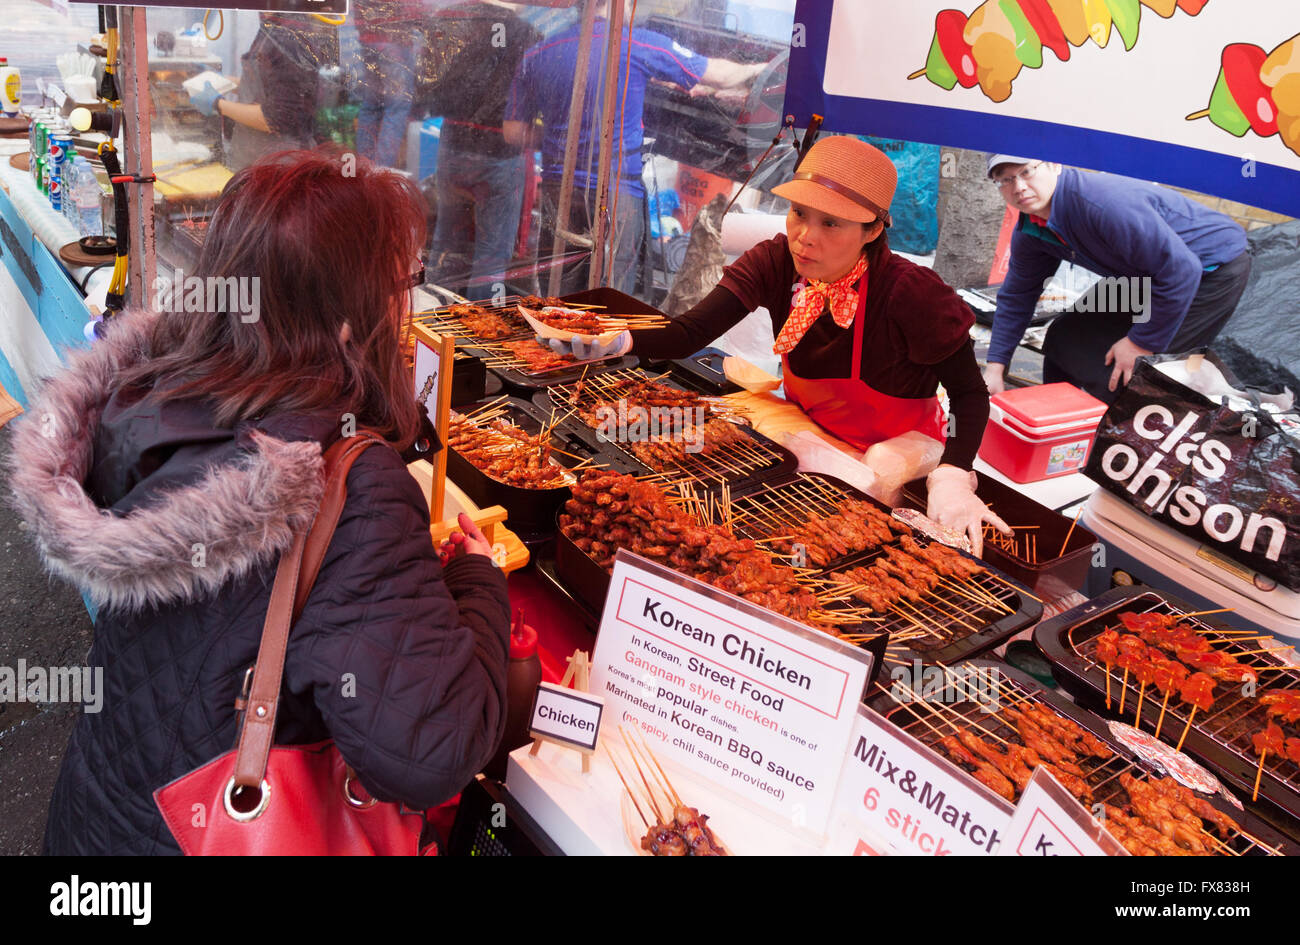 Londra multiculturale; persone ad acquistare cibo Coreano, Brick Lane domenica sistemazione, Brick Lane, Spitalfields, East End, London REGNO UNITO Foto Stock